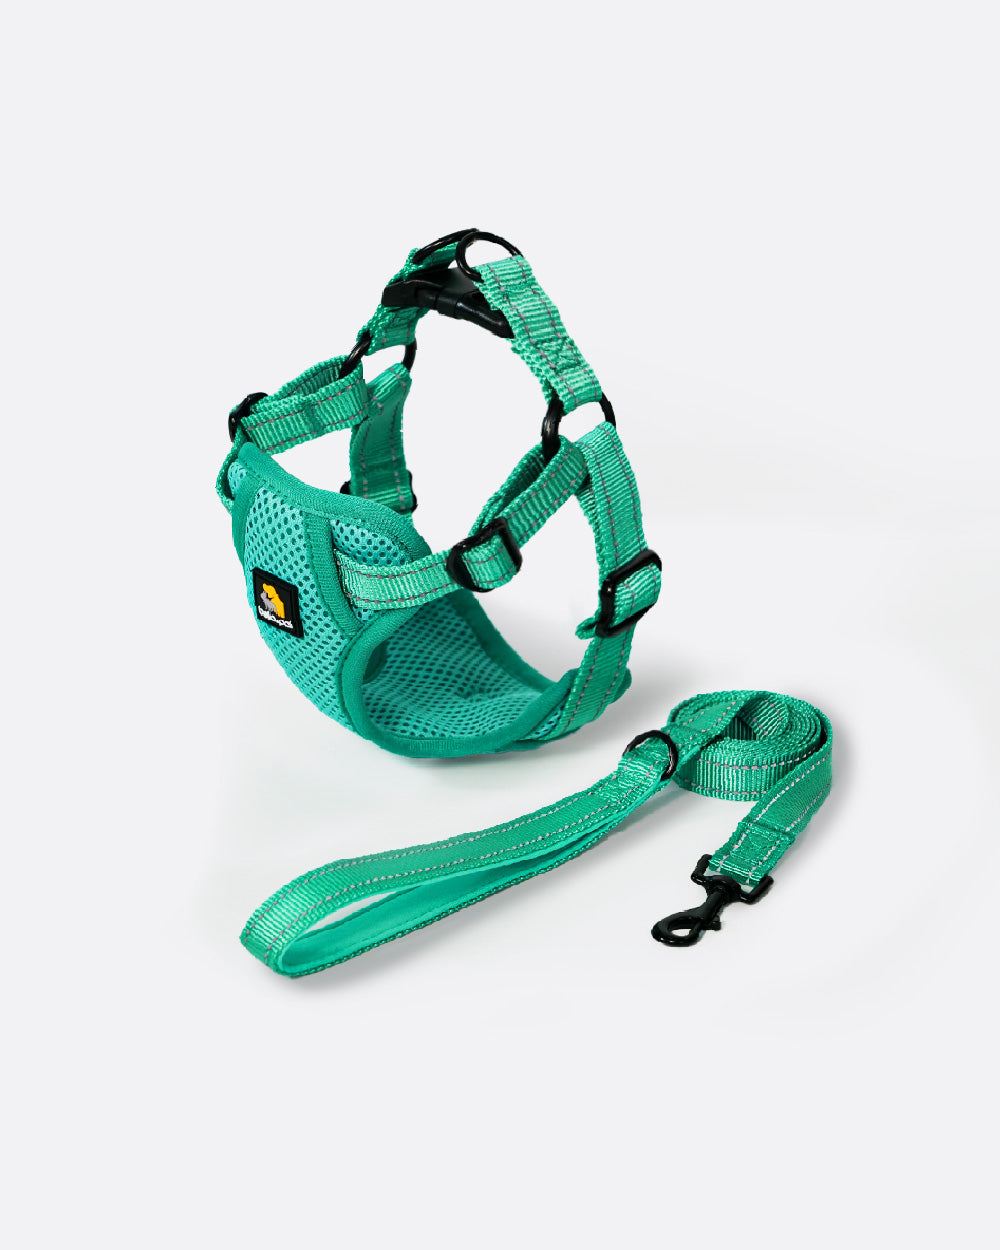 OxyMesh Flexi 踏入式狗胸背帶連牽繩套裝 - 芬蘭綠